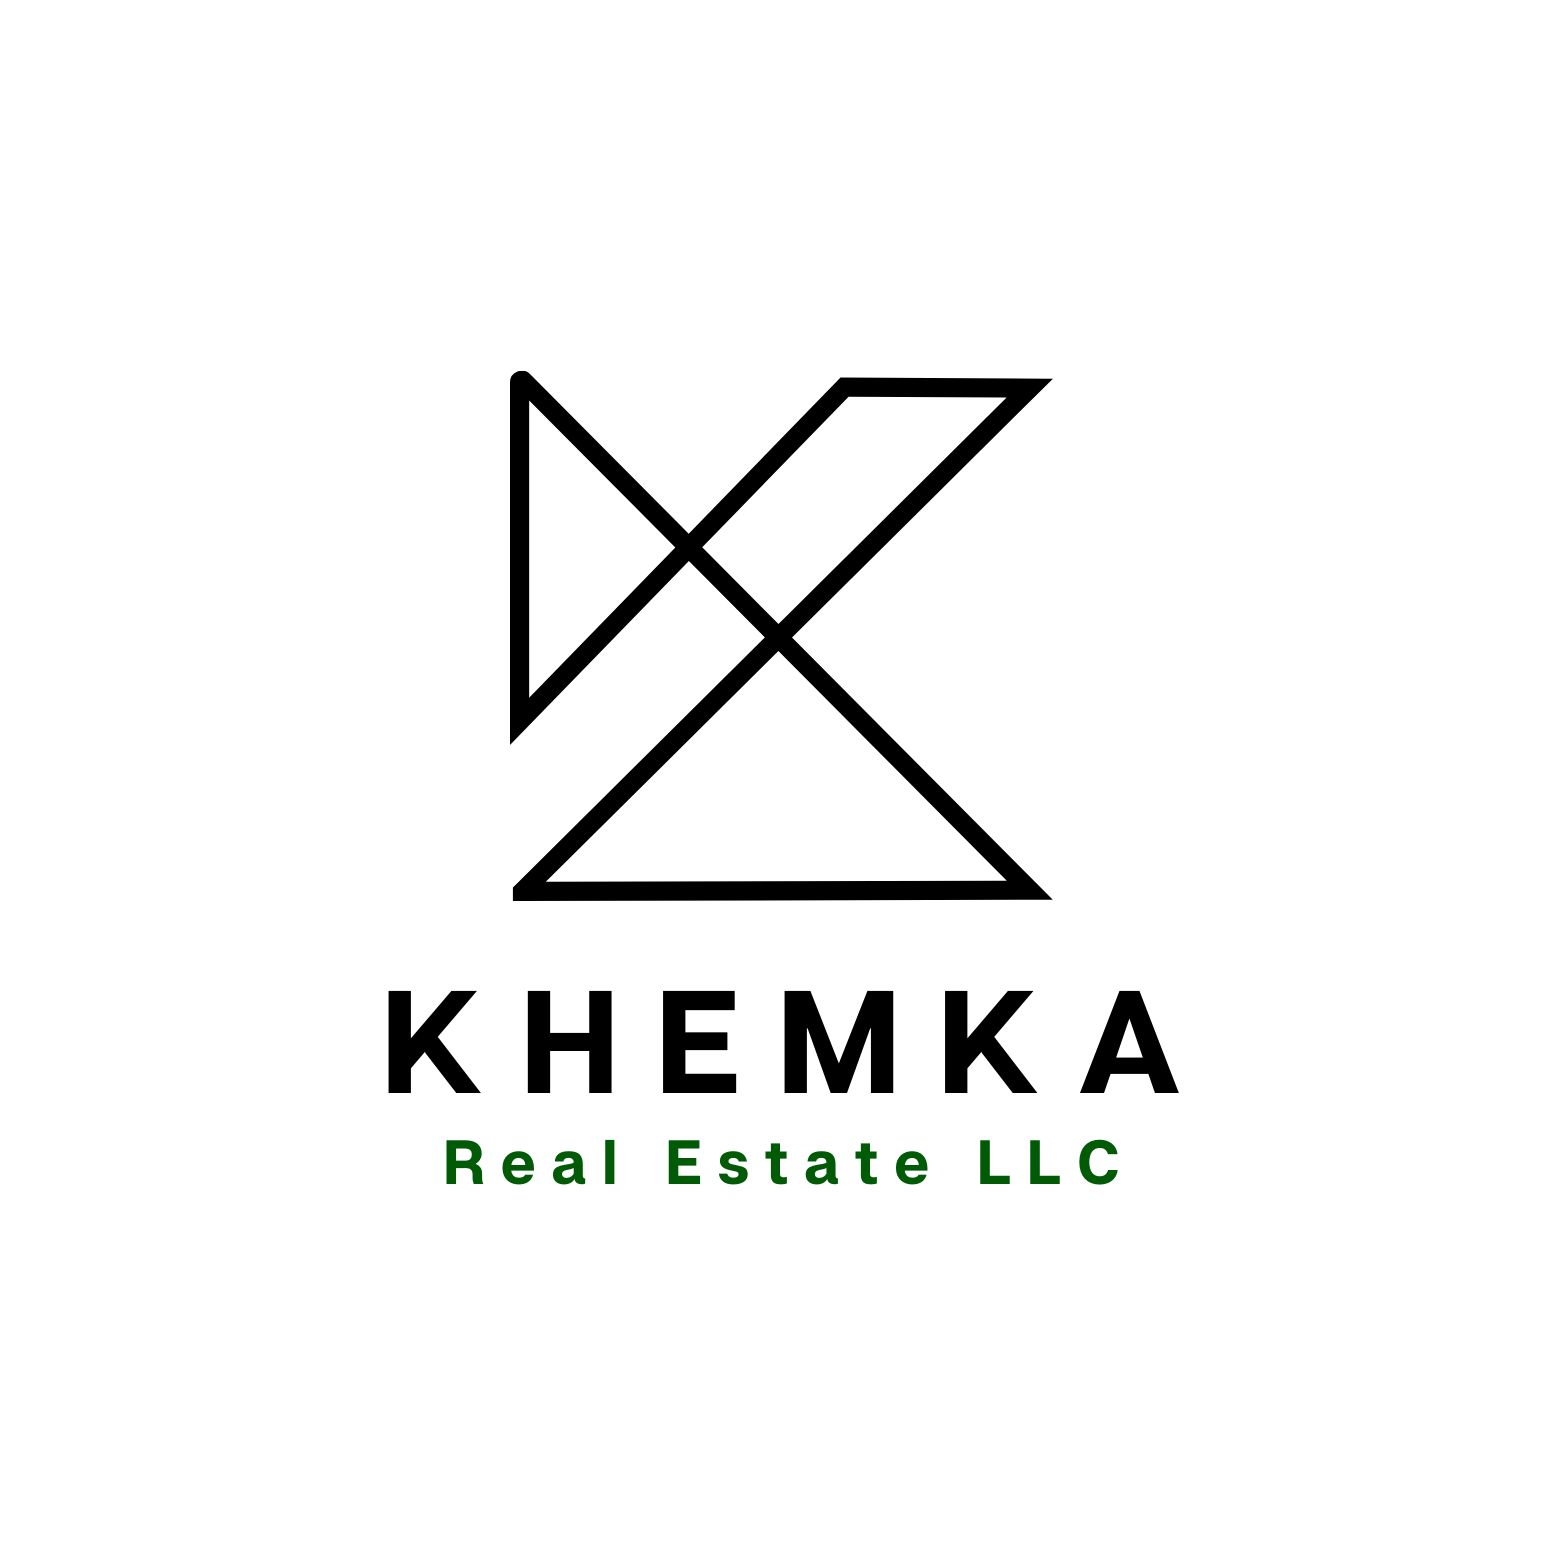 Khemka Real Estate